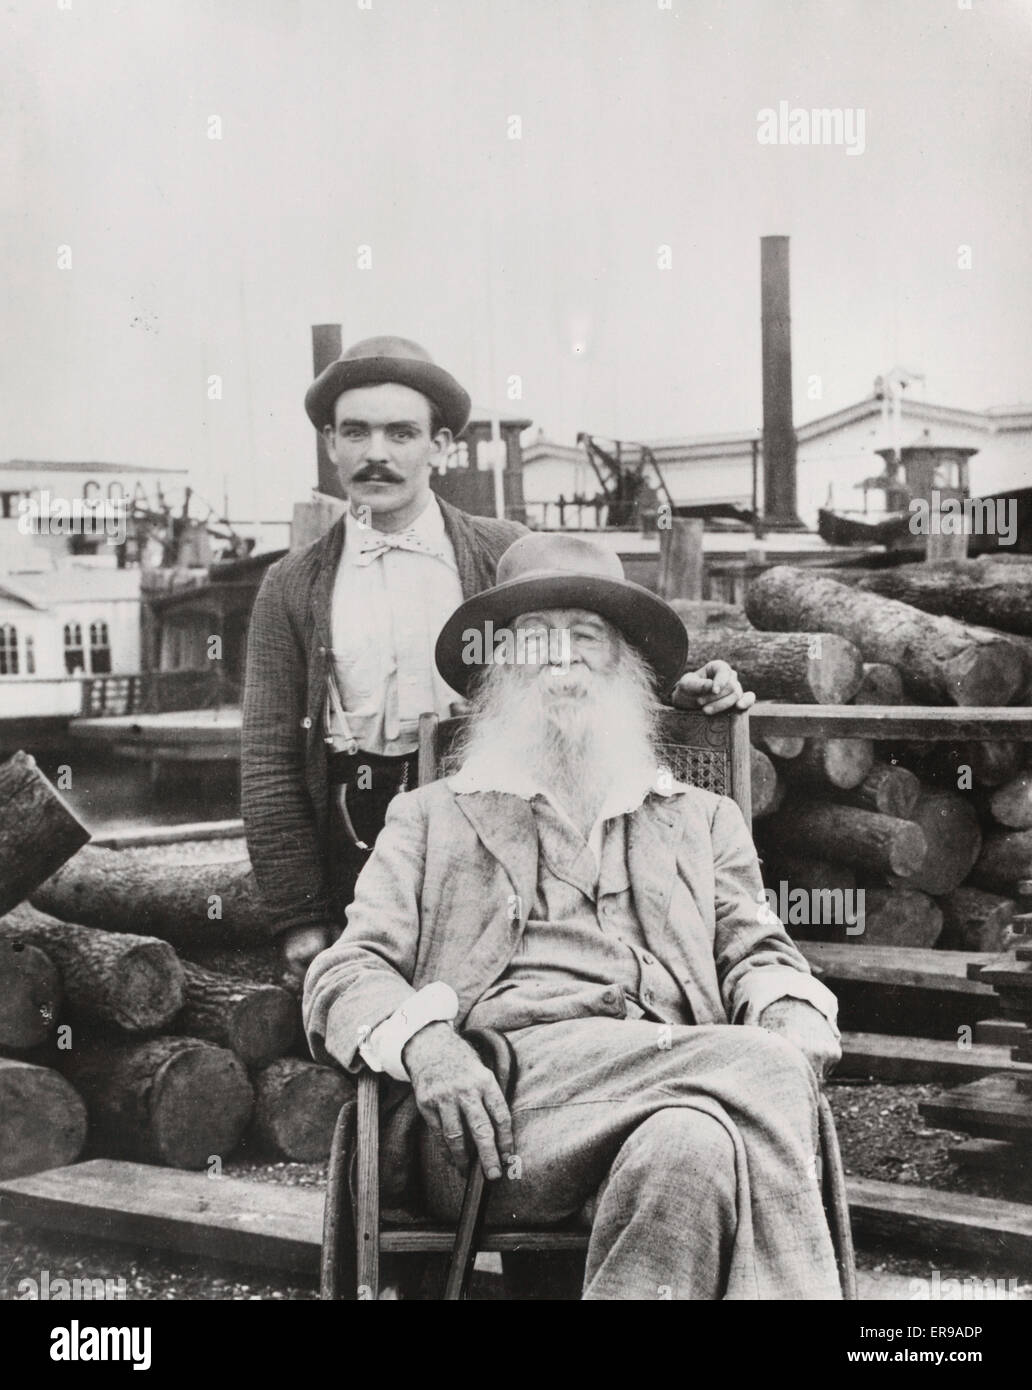 Walt Whitman avec son infirmière Warren Fritzenger, debout, et une pile de journaux derrière lui, sur le quai, probablement près de sa maison de la rue Mickle à Camden. 1890 Banque D'Images